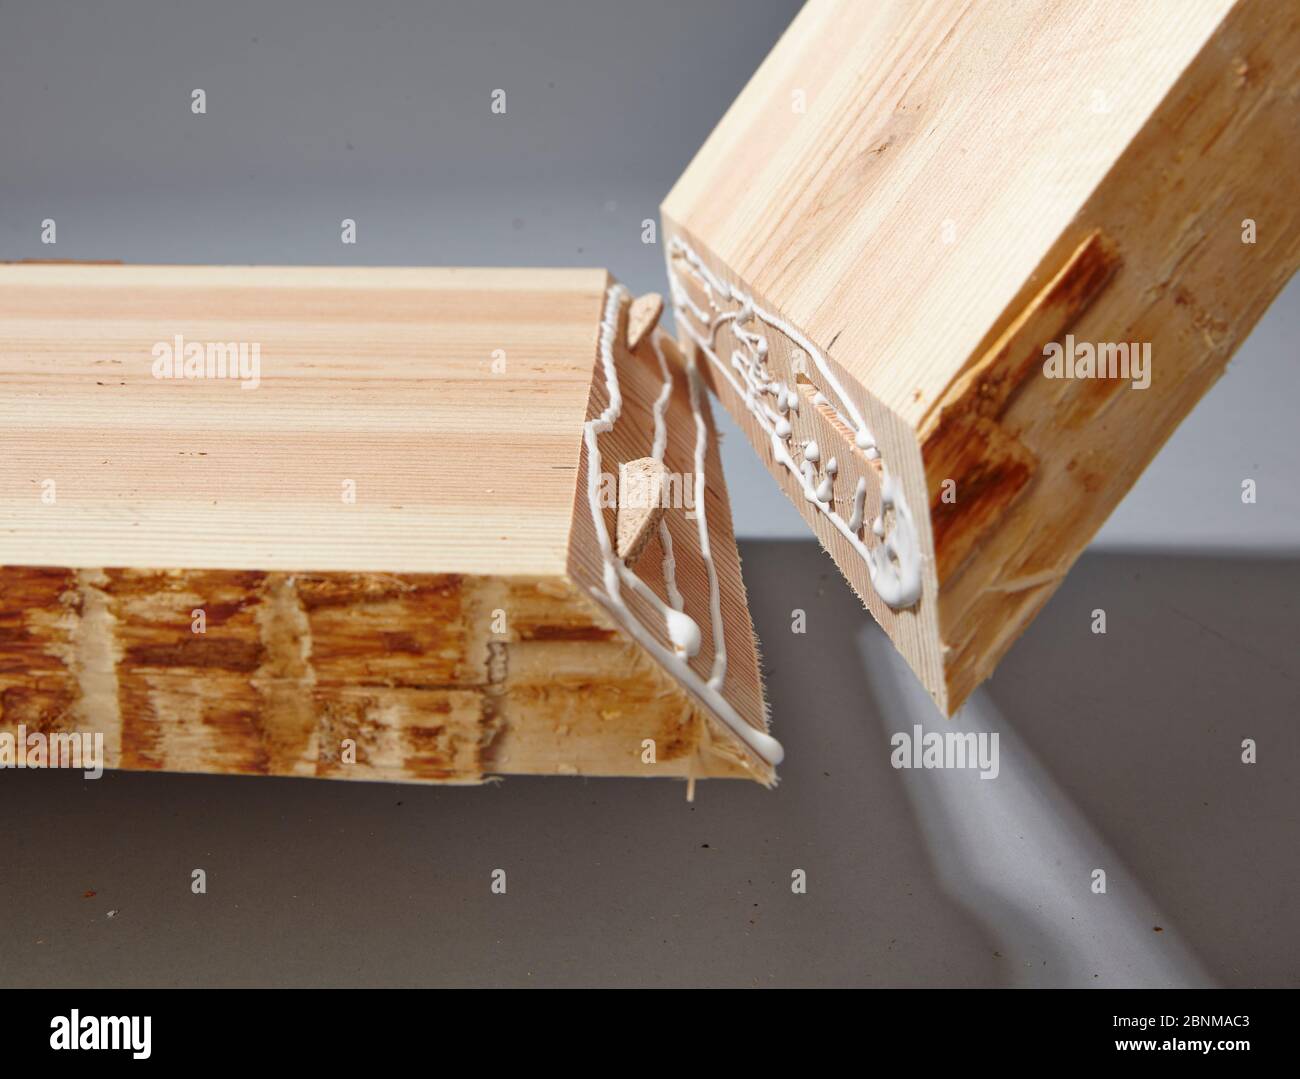 Bau eines Holzregals, Eigenfertigung, Schritt für Schritt, Schritt 15, Verschmelzung der beiden zu verleimenden Platten, mit Flachdübeln zur Stabilisierung der Klebung, weitere Aufnahmen eines weiteren DIY-Regals Stockfoto